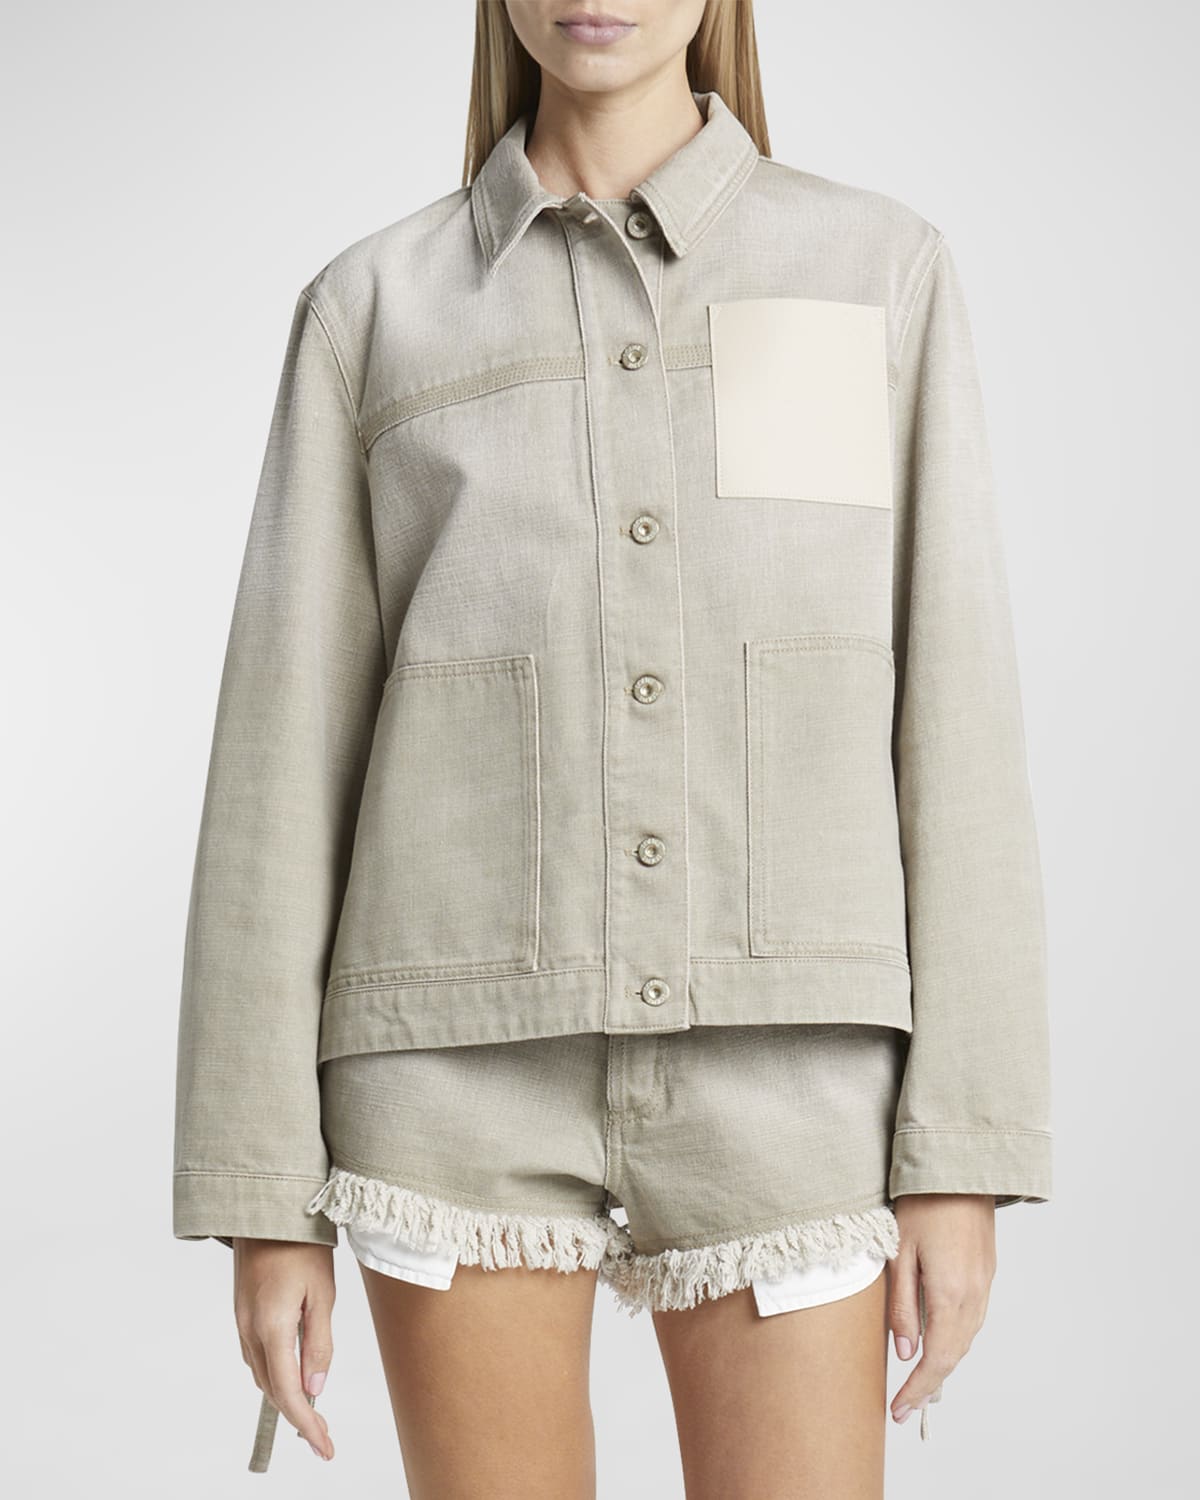 x Paula Ibiza Anagram Leather Patch Self-Tie Workwear Jacket